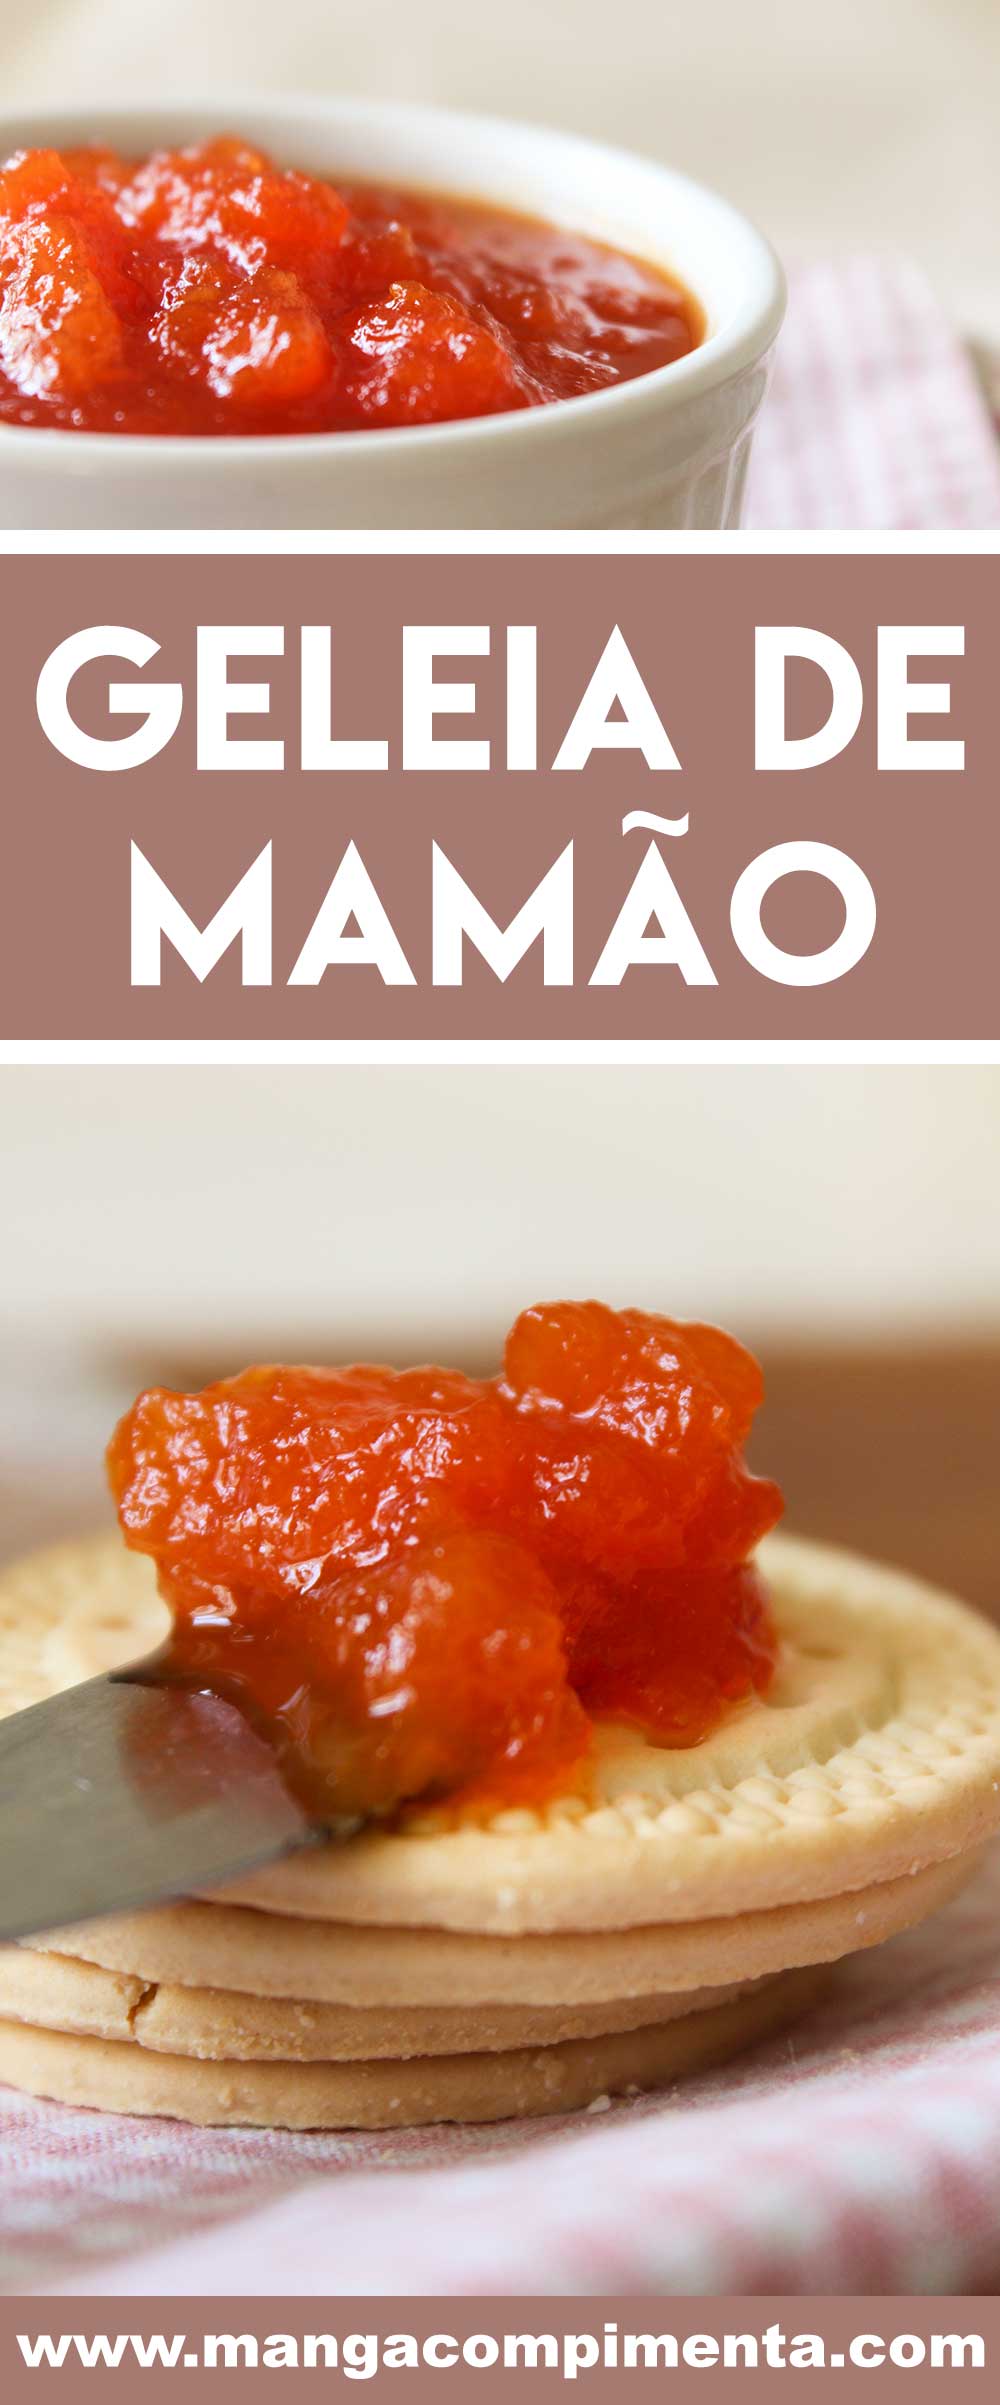 Receita de Geleia de Mamão - sirva no café da manhã ou no lanche da tarde.